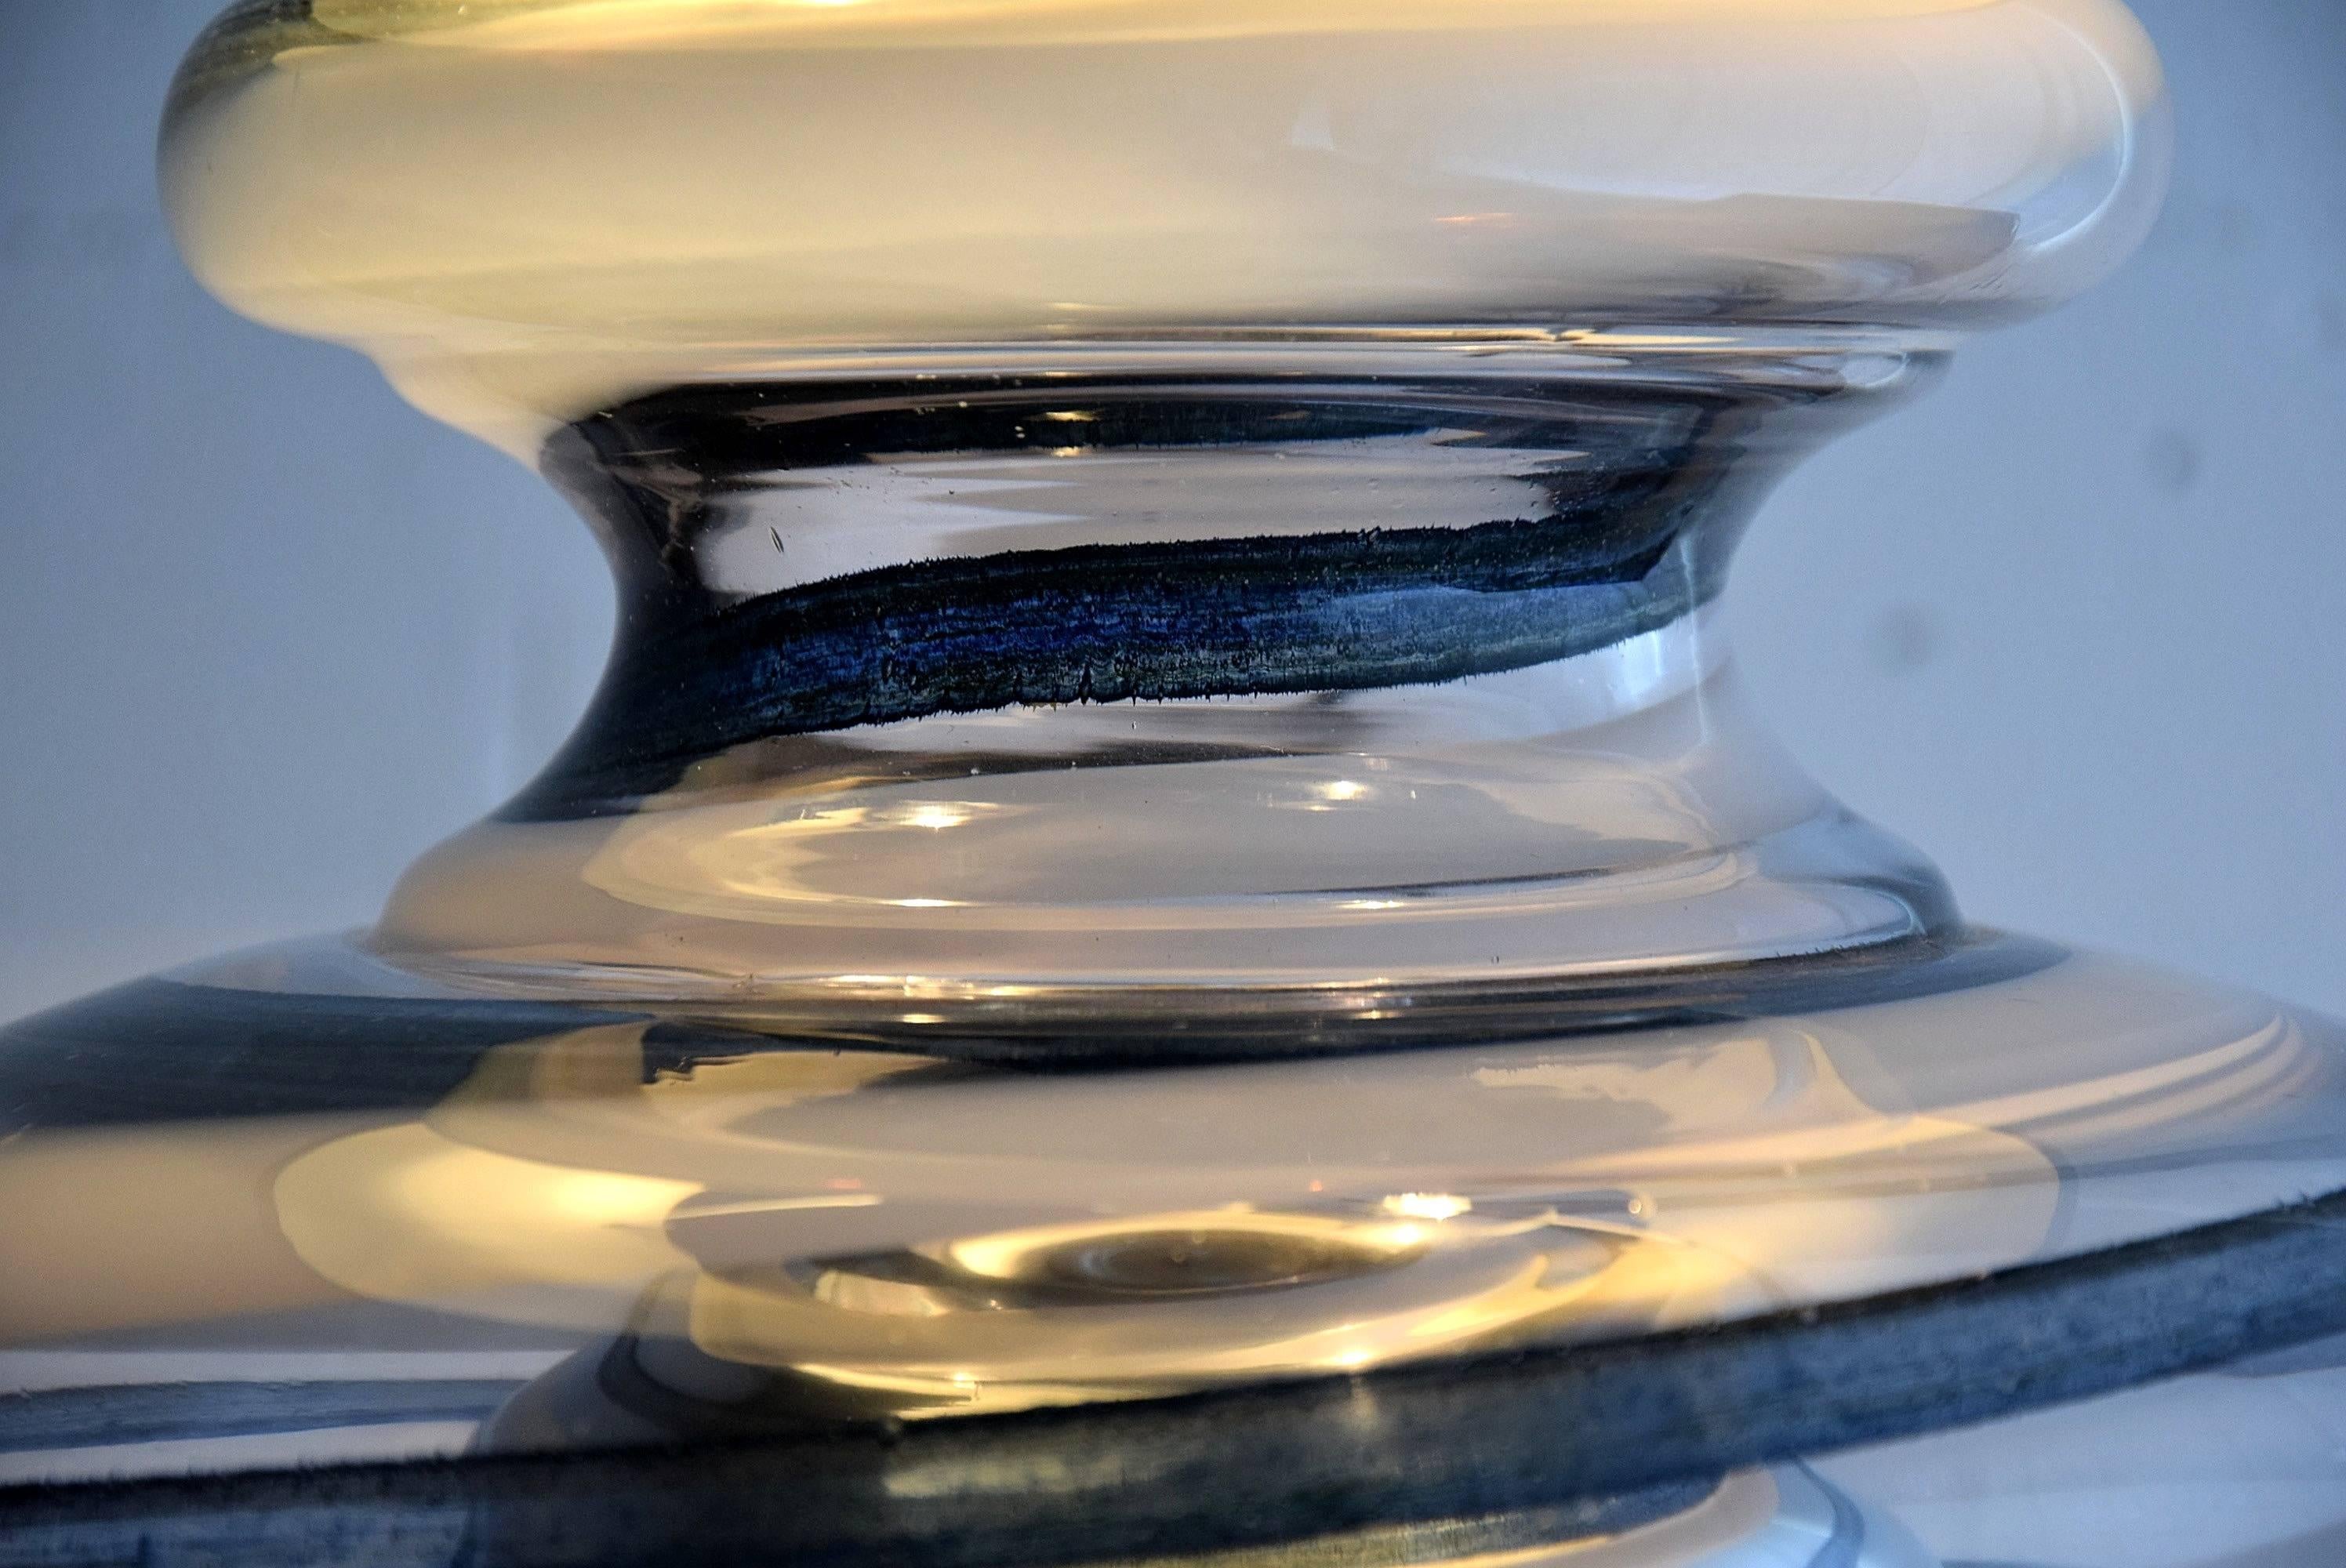 Schöne Lampe aus mundgeblasenem Glas, hergestellt von BD Lumica in den 1970er Jahren.

Die Lampe nimmt drei Glühbirnen auf und kann zwischen einer, drei oder keiner Glühbirne (aus) umgeschaltet werden.

Abmessungen: H 60 x T 45 cm.